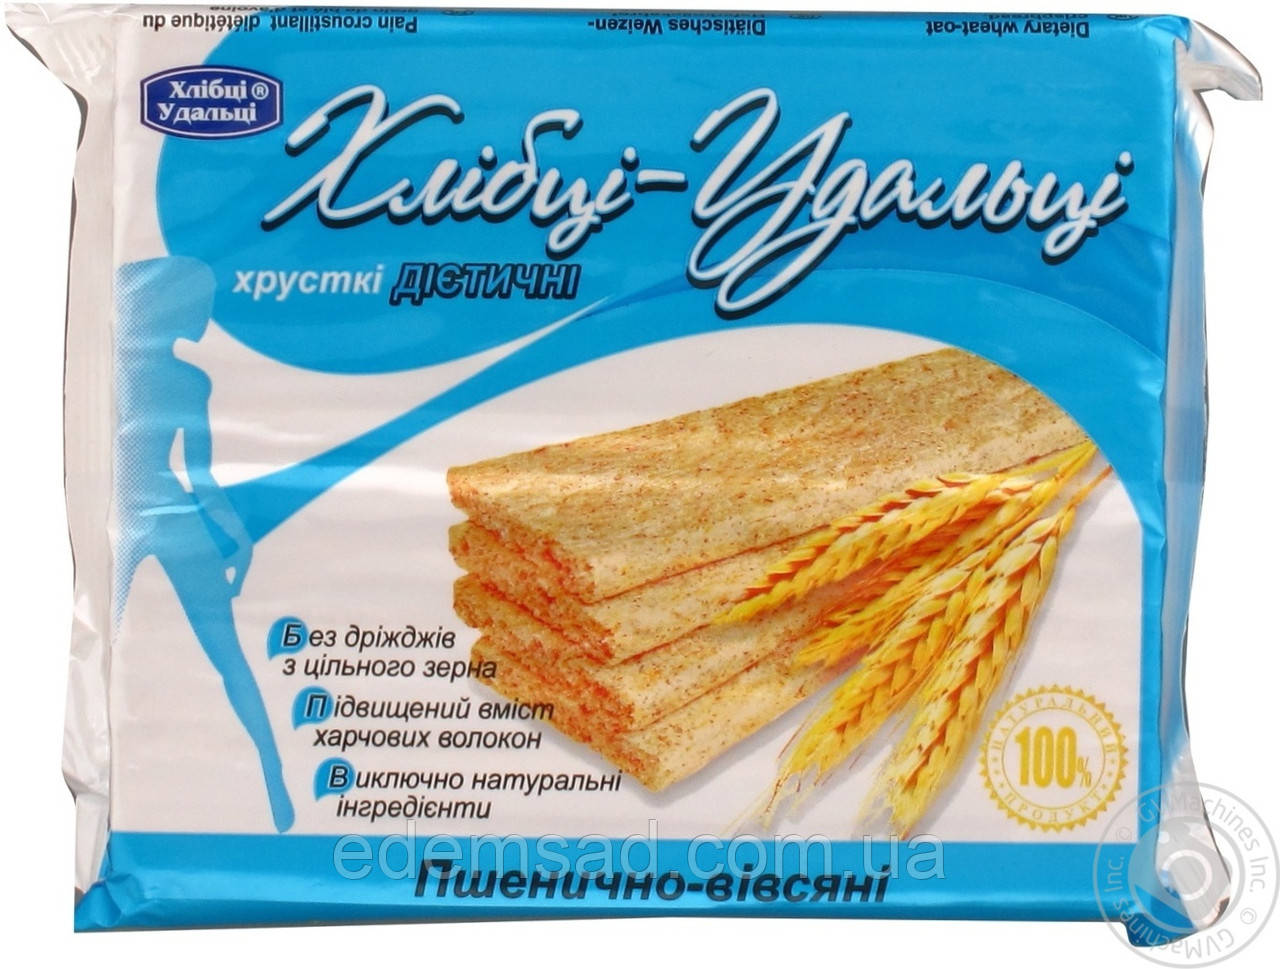 Хлібці-удальці "Пшенічно-вівсяні", 100 г